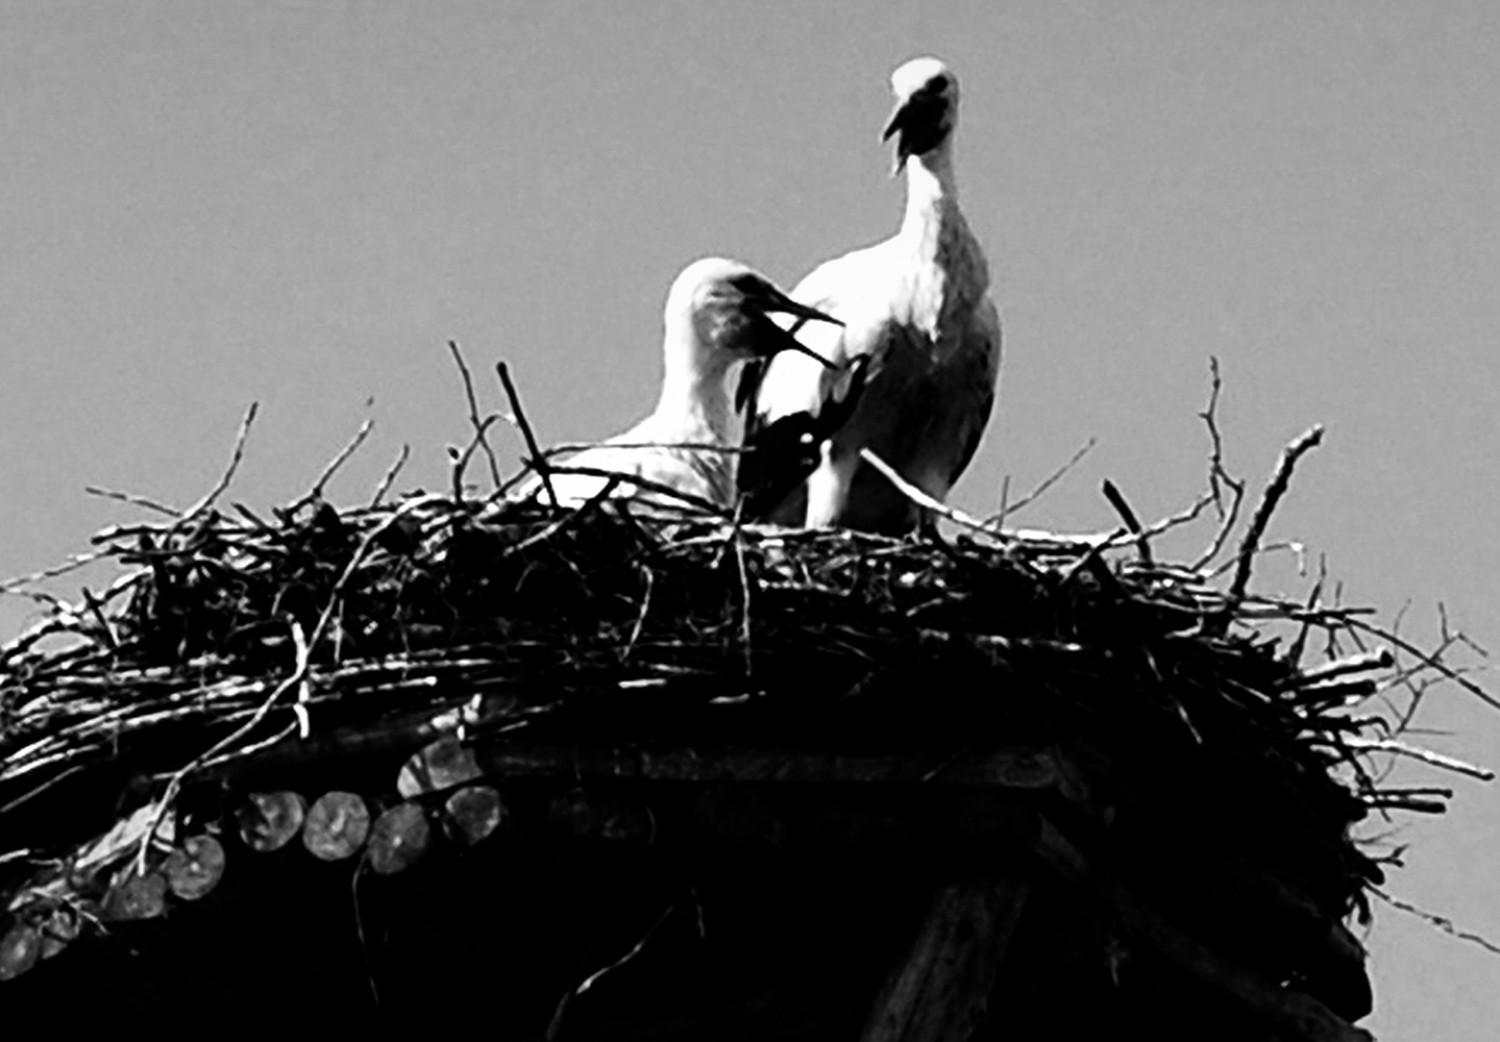 Cuadro moderno Horizontes parentales - foto en blanco y negro con pájaros y cielo